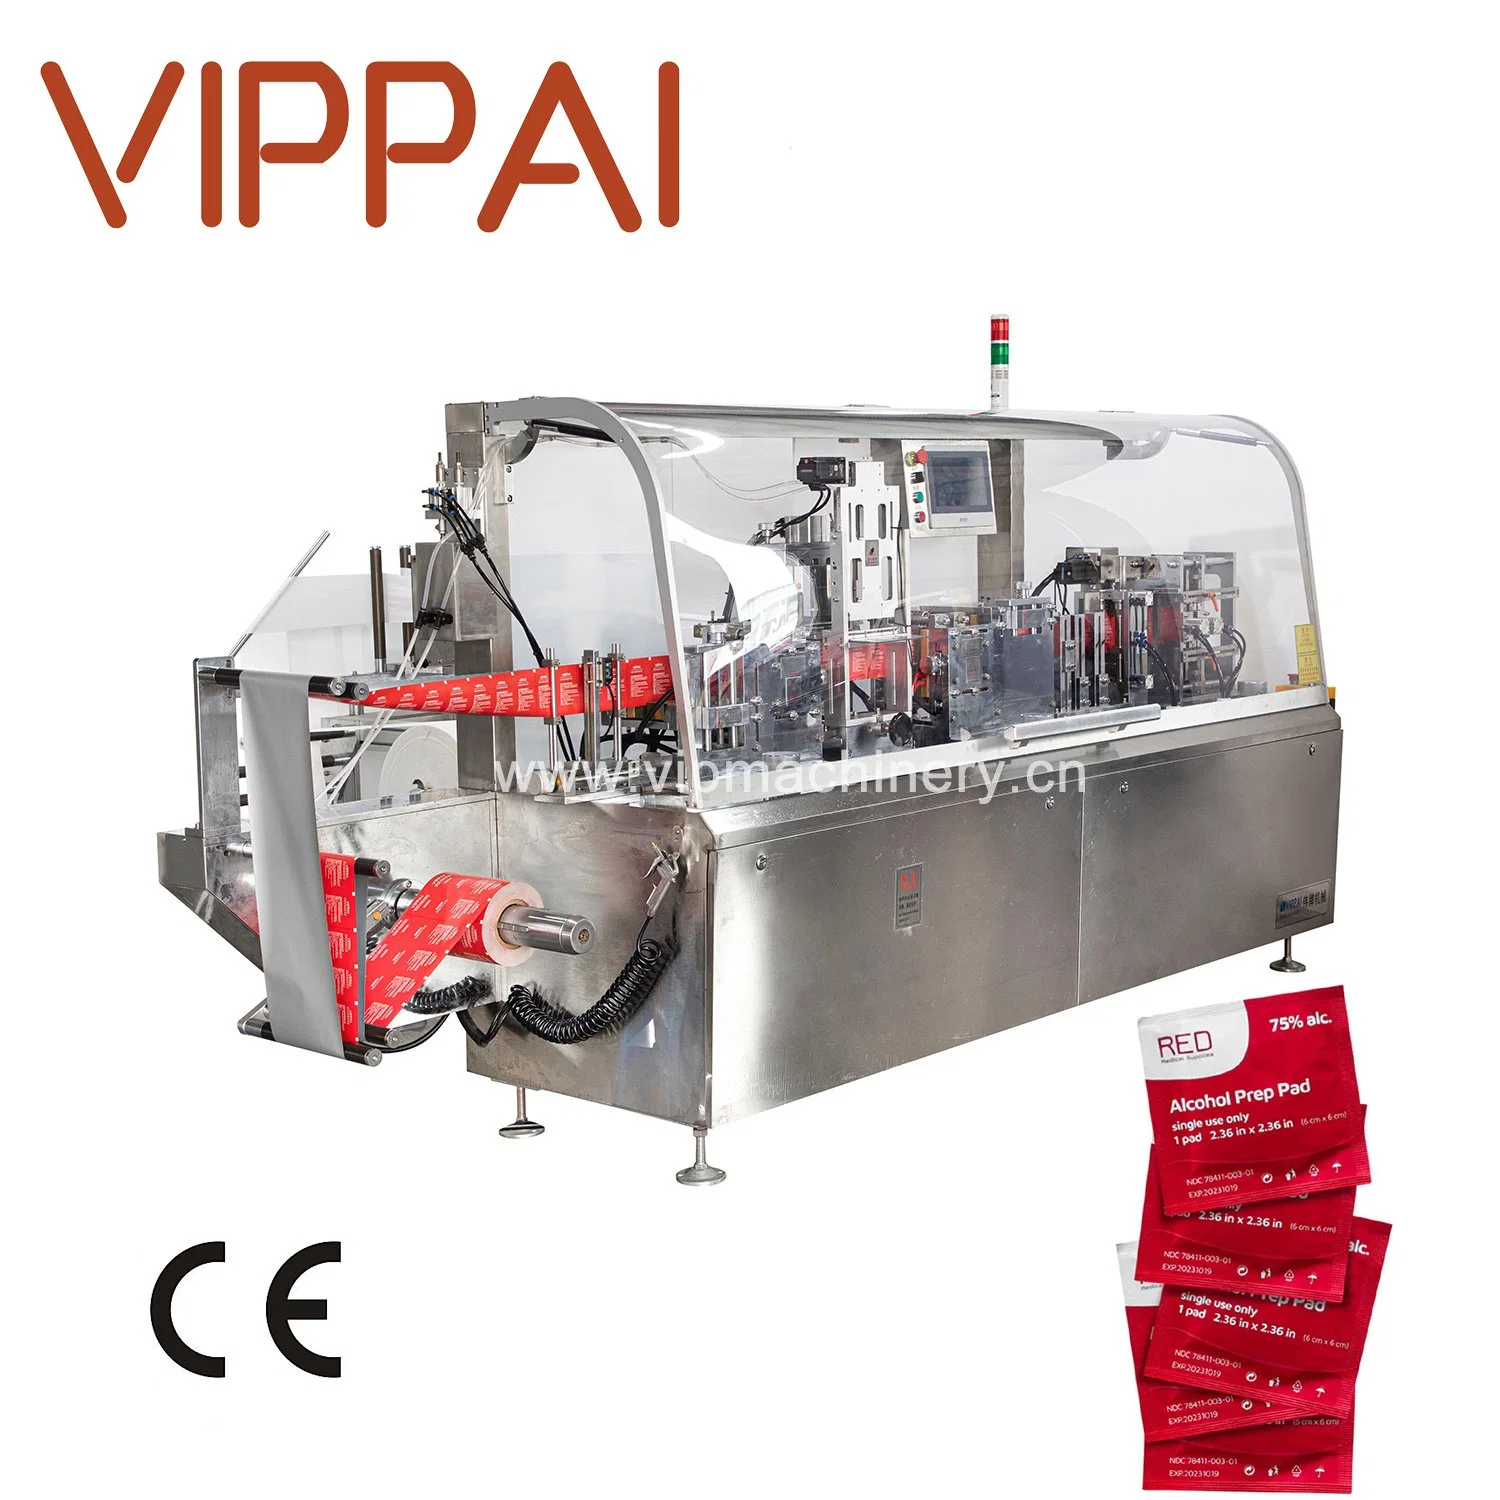 Lingettes humides multifonctions Vippai pour la fabrication de la ligne de production de tissus machine d'emballage Pour usage médical quotidien